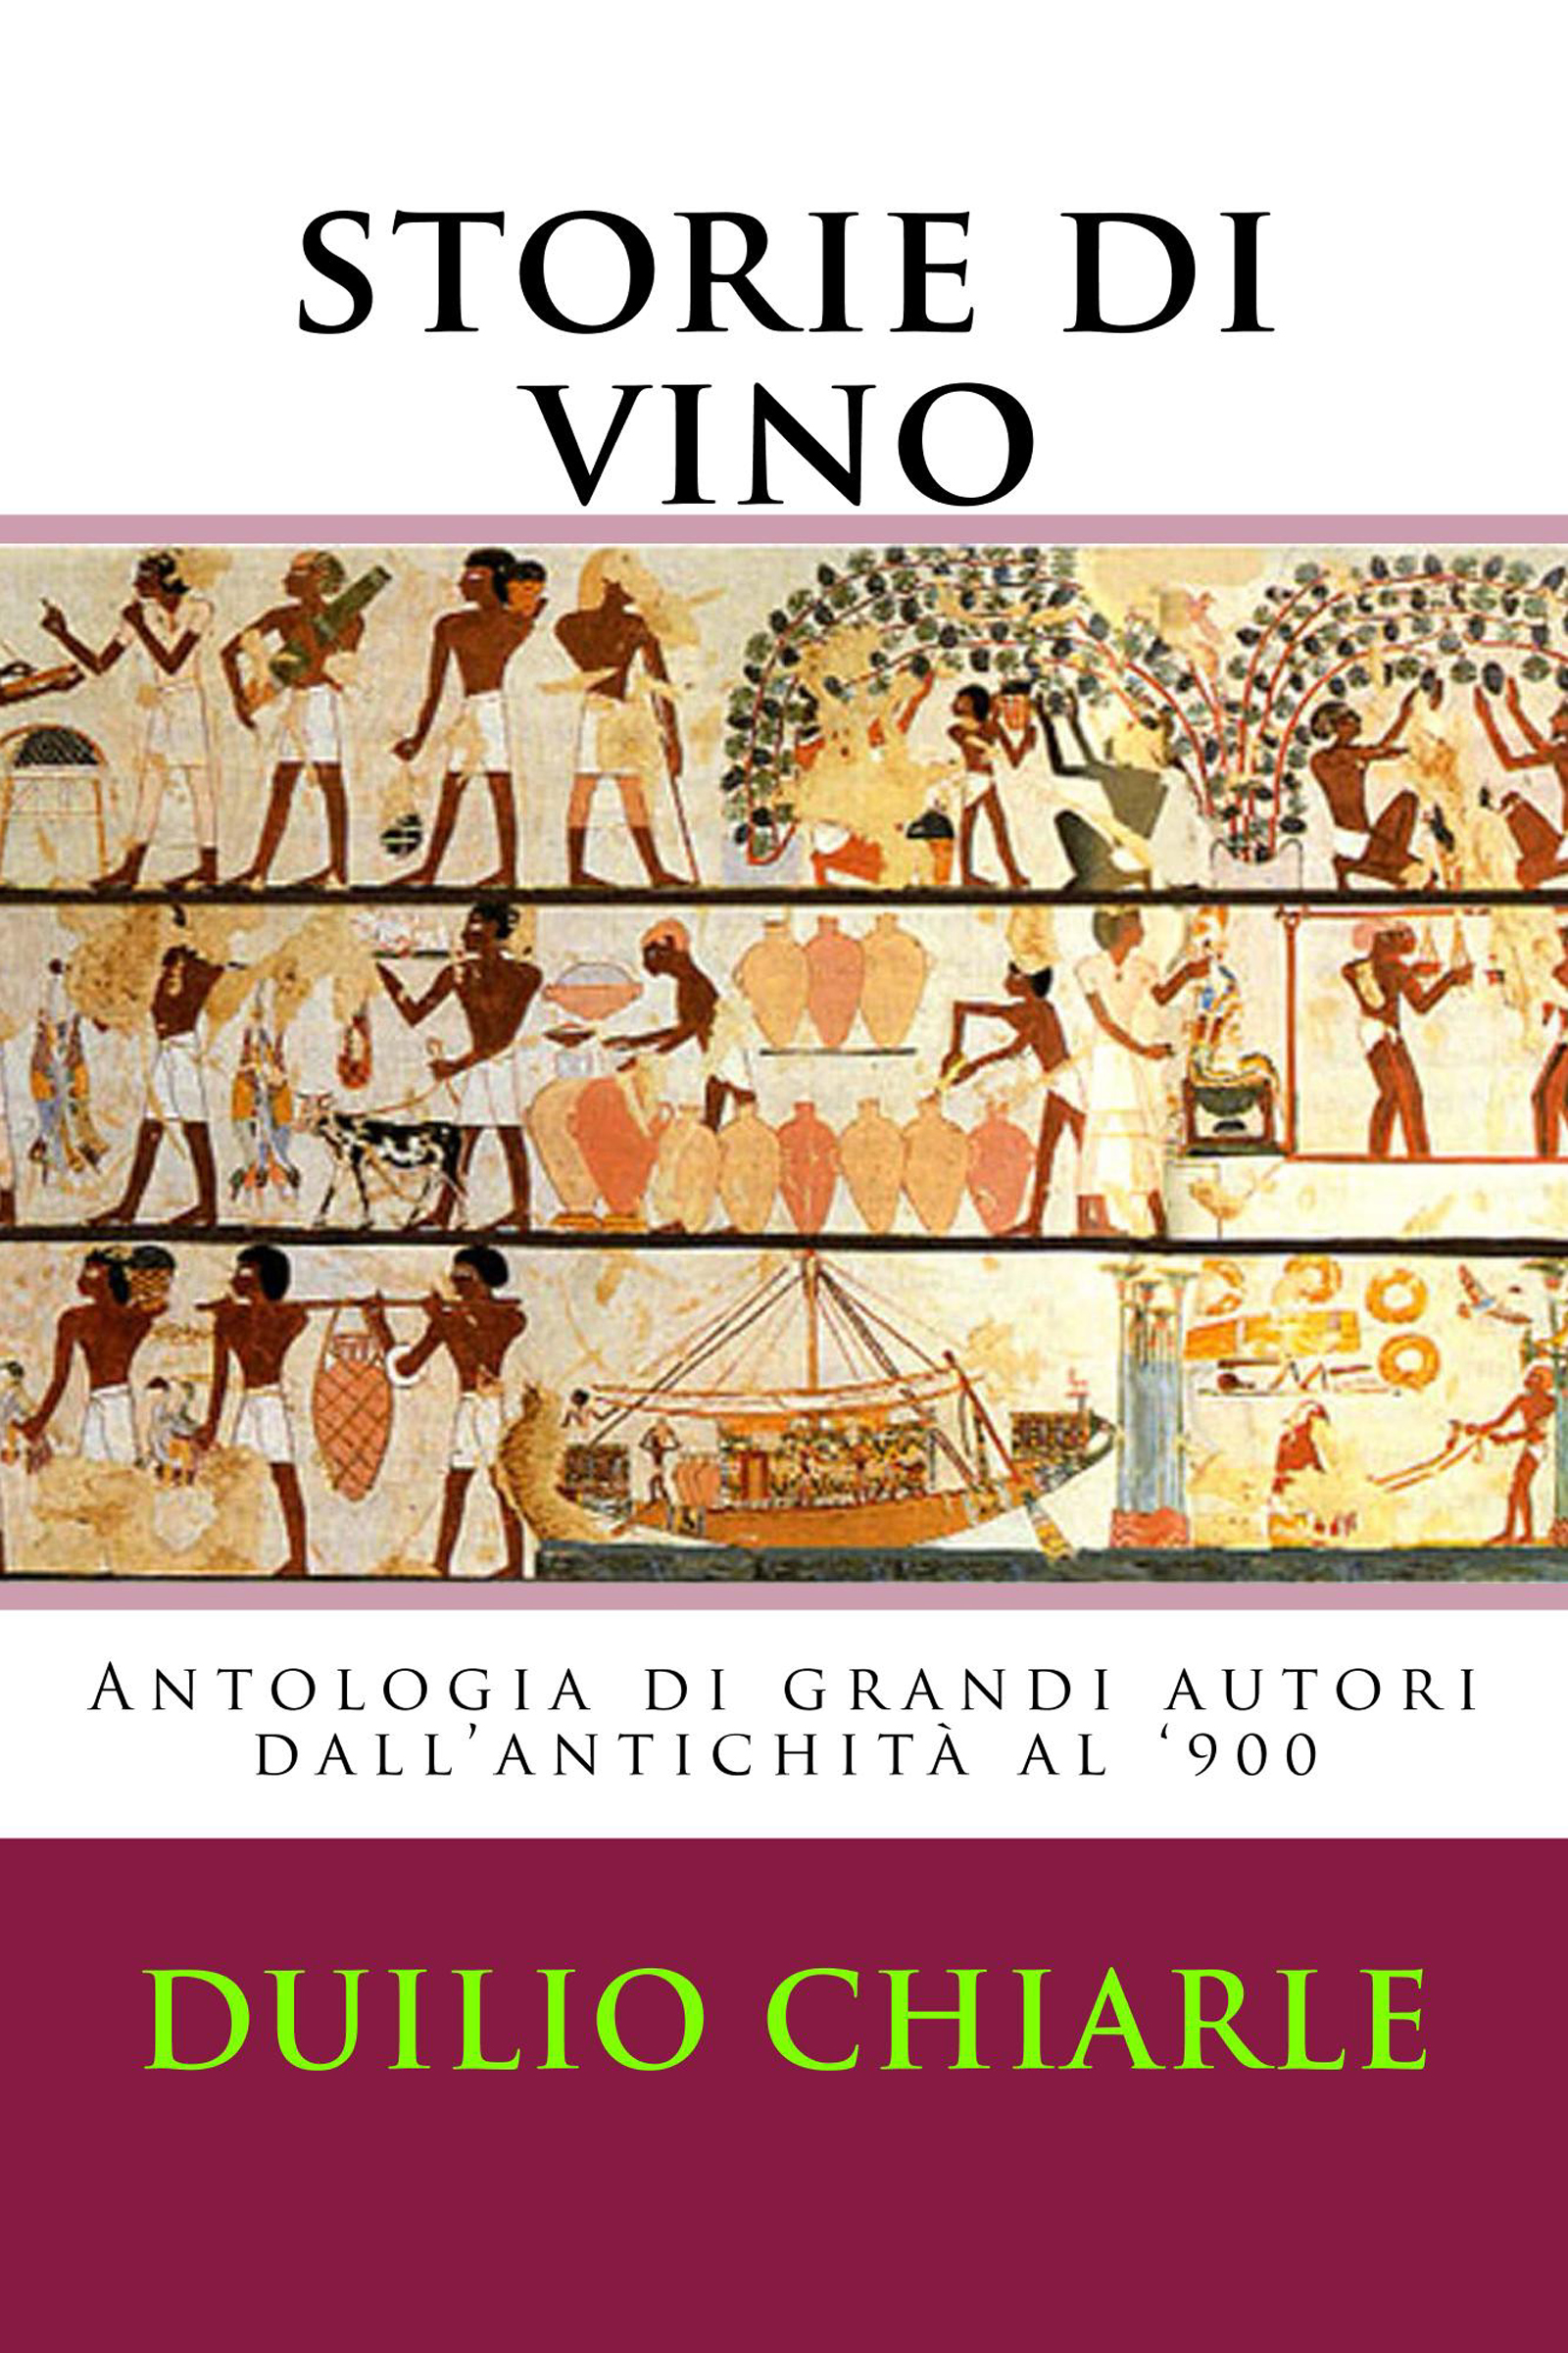 Storie di vino: Antologia di grandi autori dall'antichità al '900